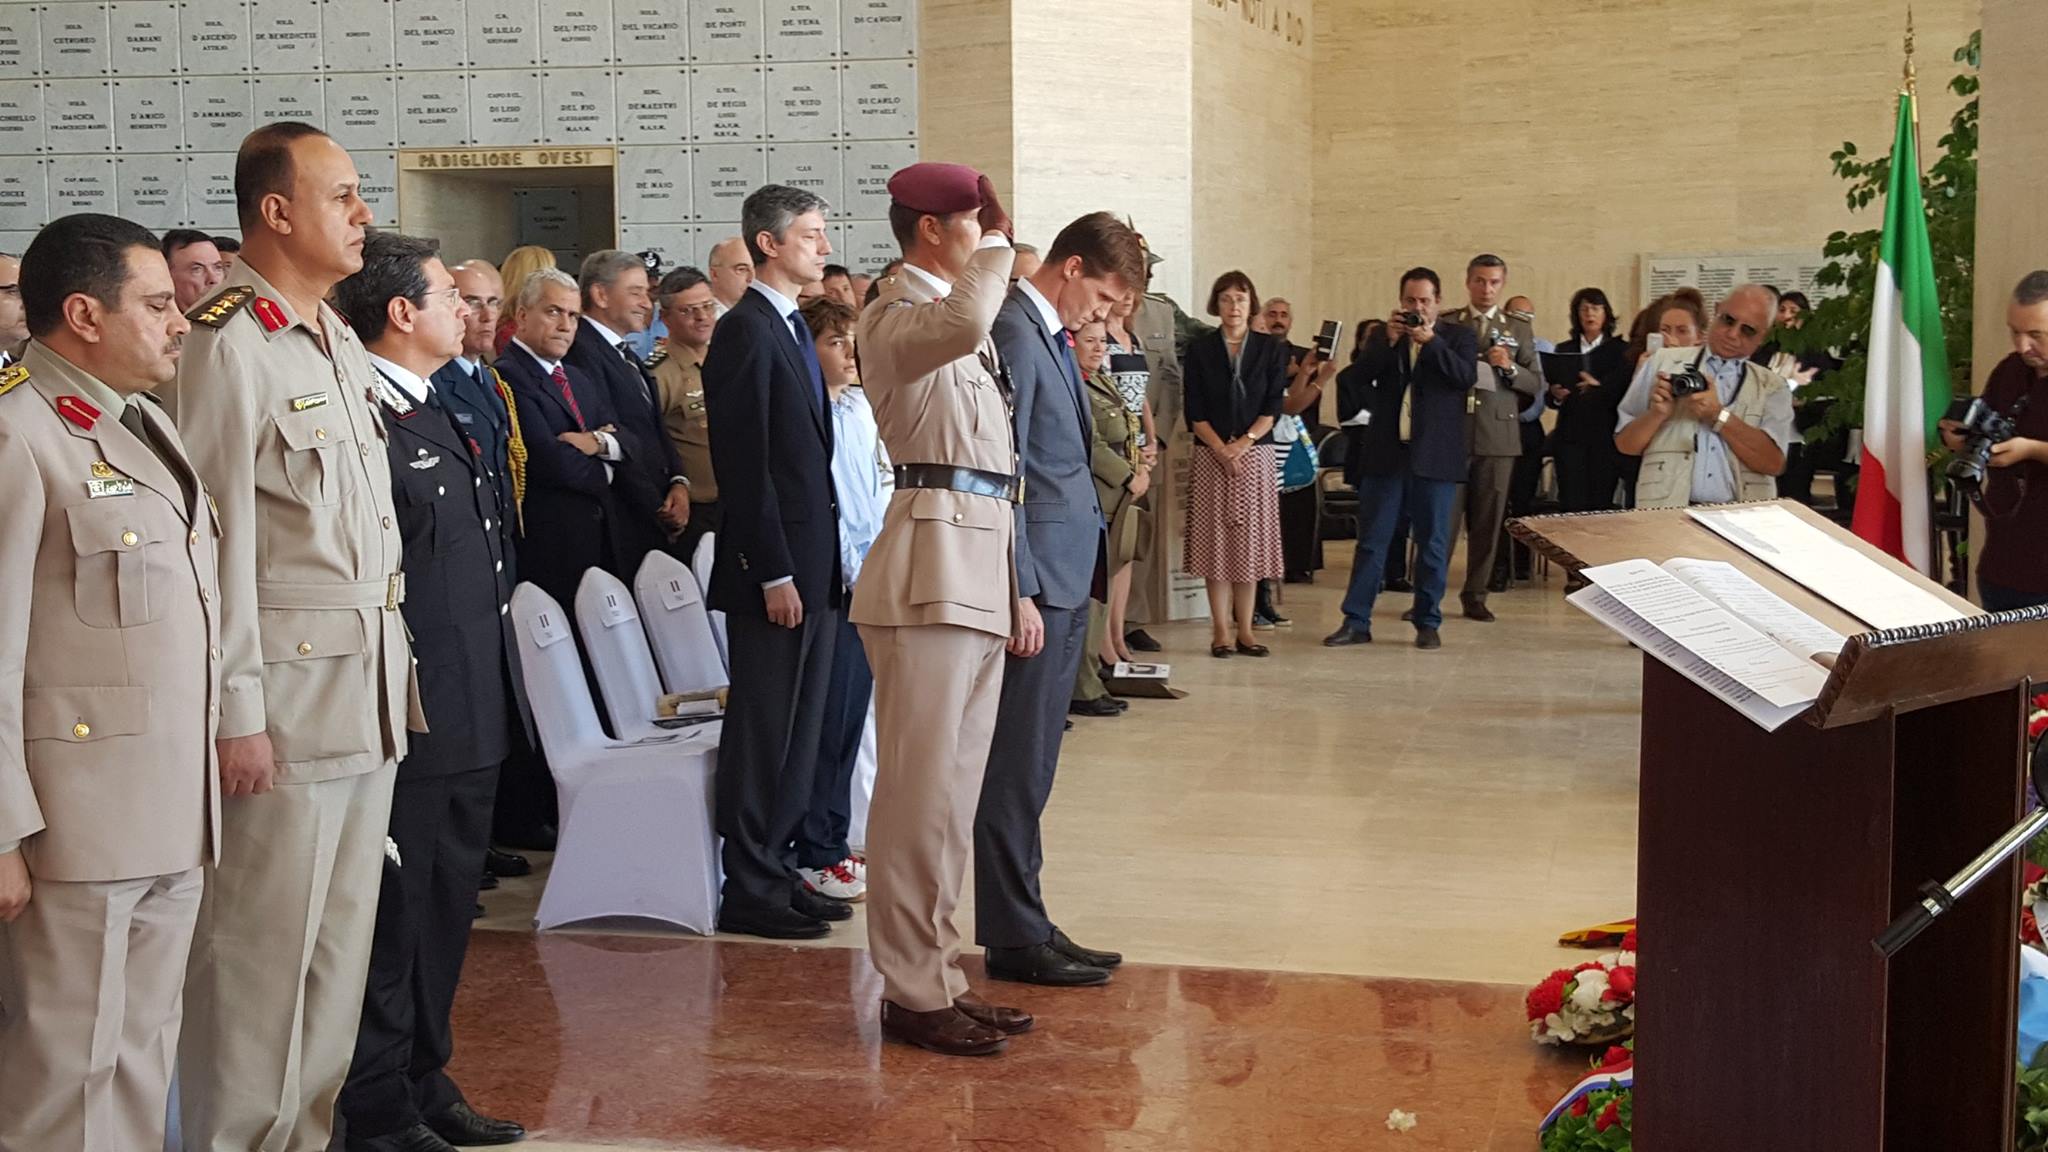 السفير البريطاني ونائب الملحق العسكري يضعان اكليلا من الورد بمقر المقبرة الايطالية